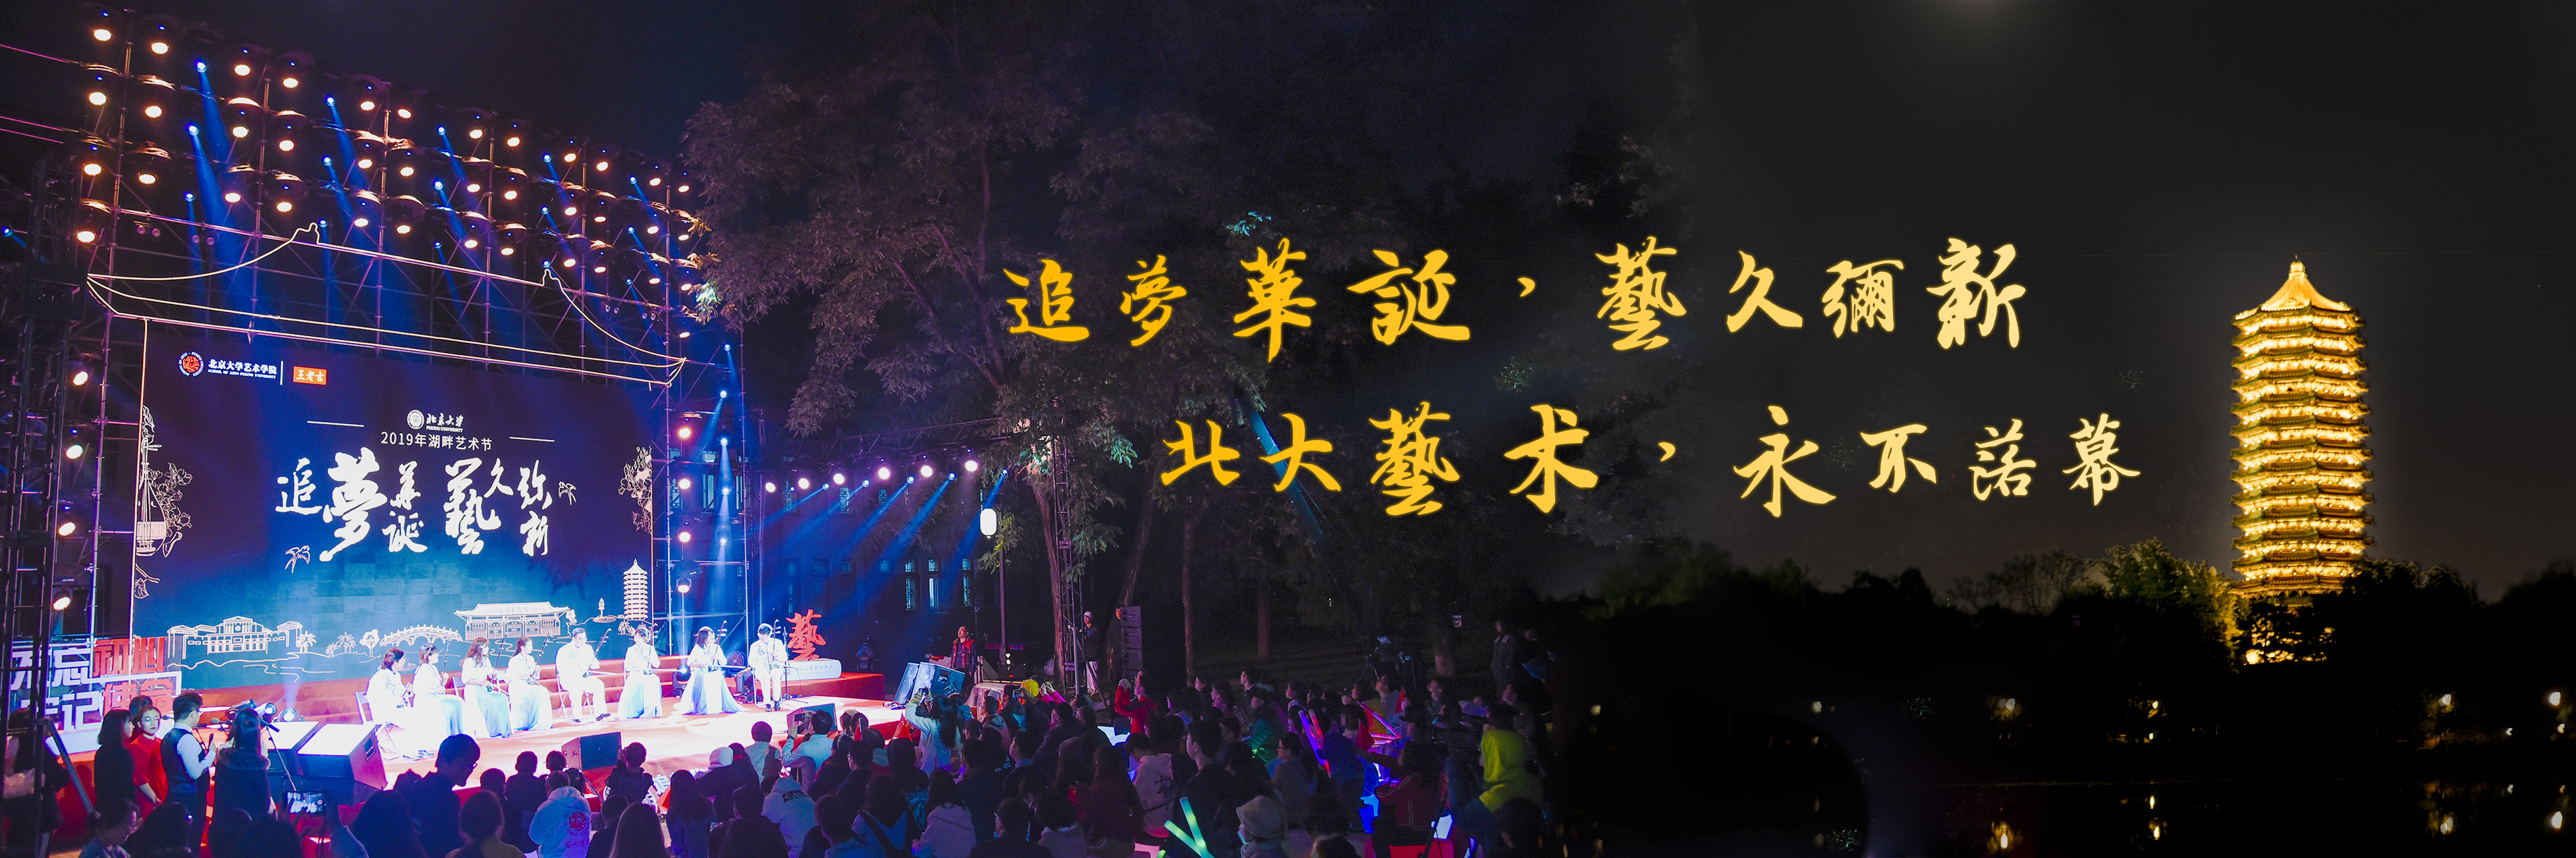 2019北京大学湖畔艺术节成功举办